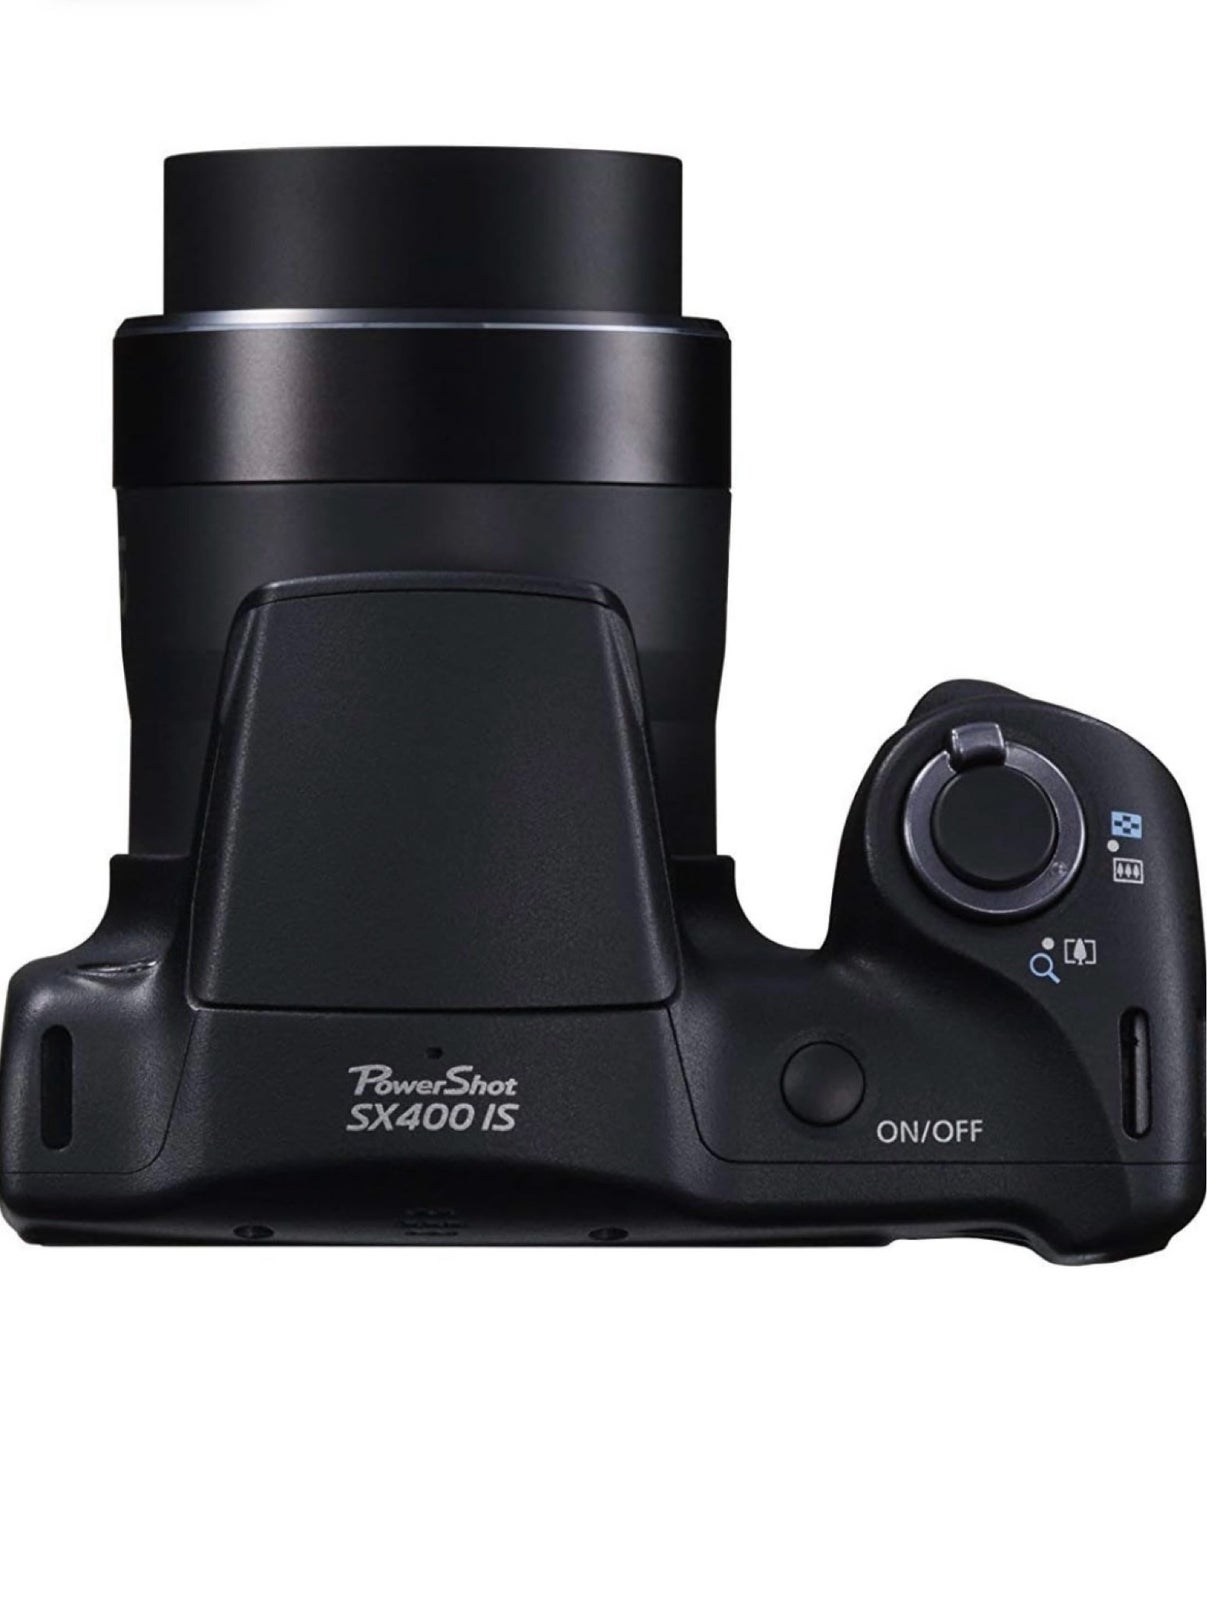 Canon, CANON POWERSHOT SX400 IS, 16 megapixels